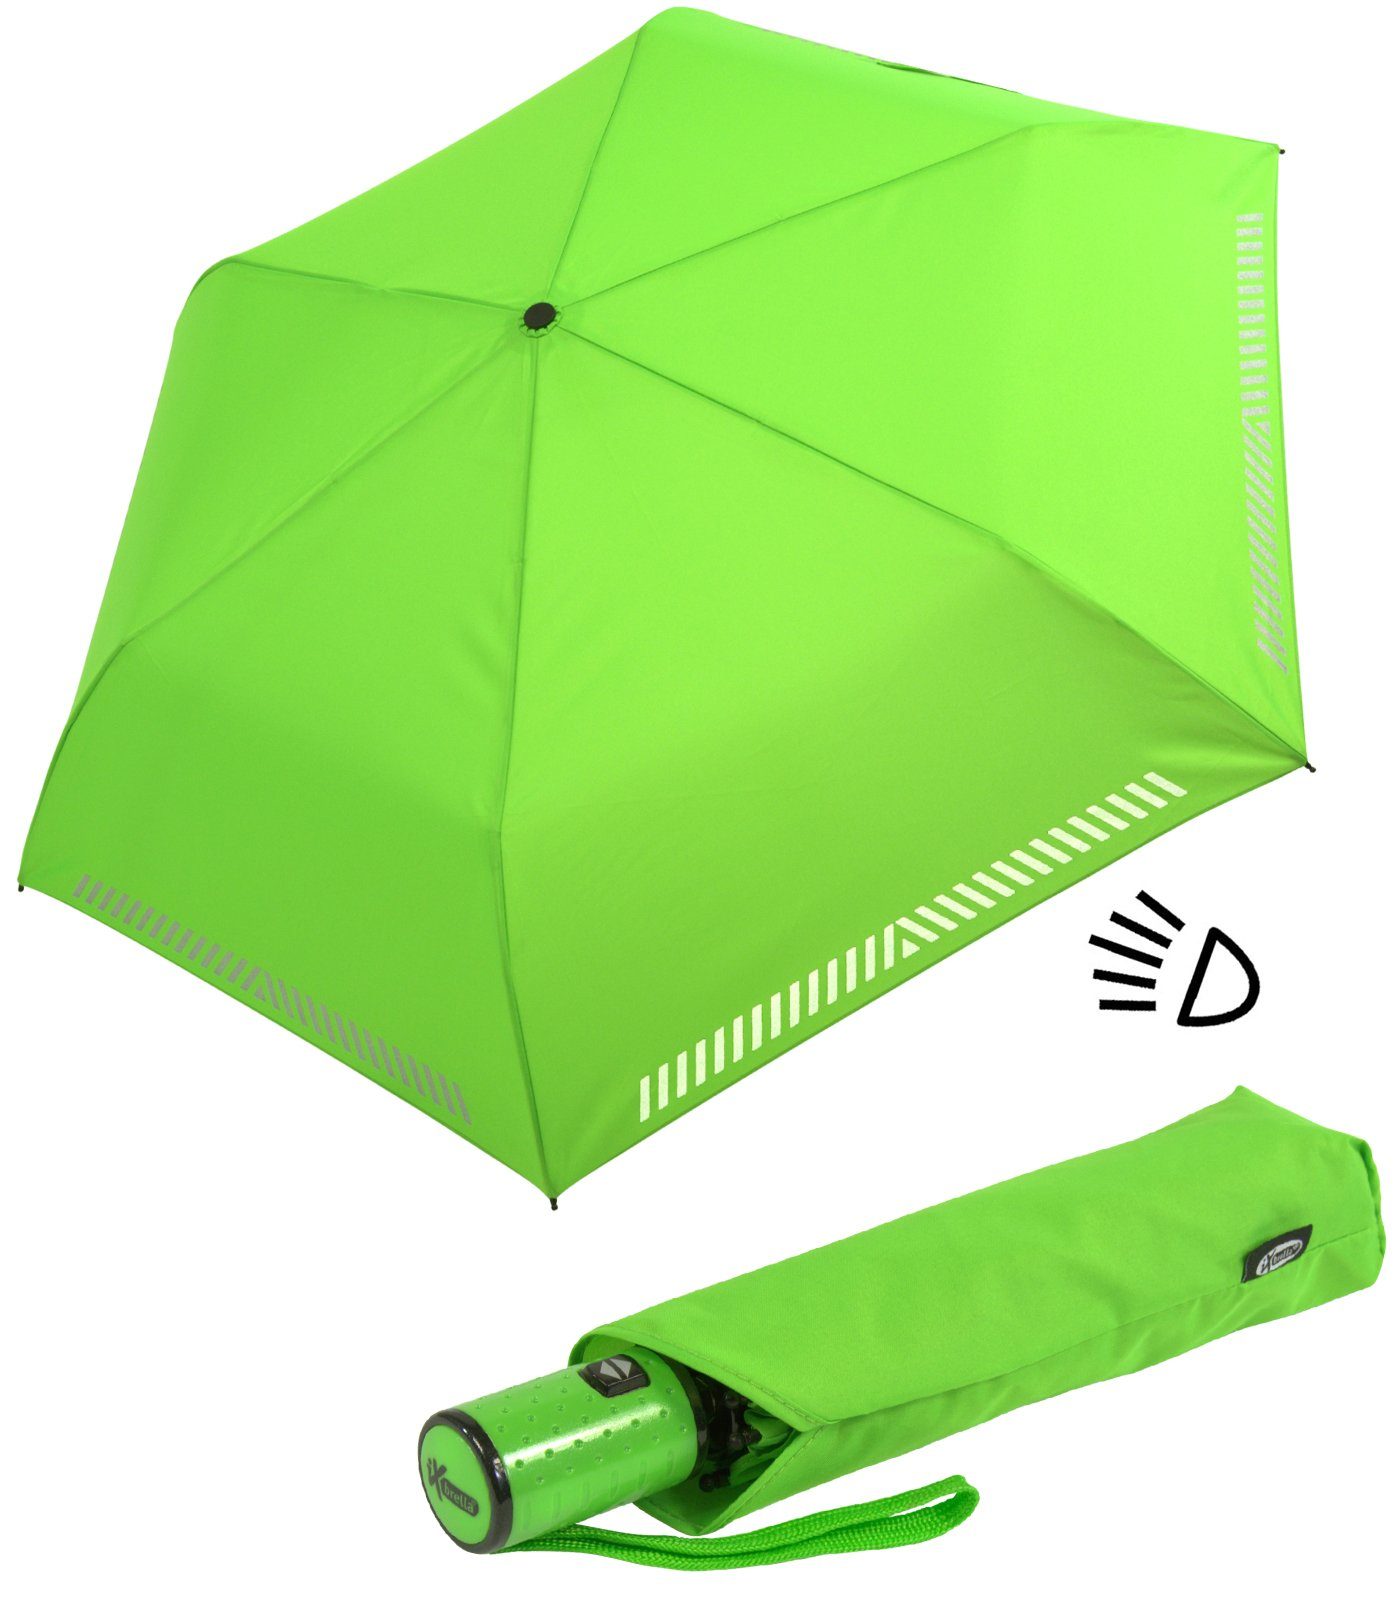 Durchfahrtshöhe iX-brella Taschenregenschirm Kinderschirm mit Auf-Zu-Automatik, Sicherheit grün durch reflektierend, Reflex-Streifen - neon